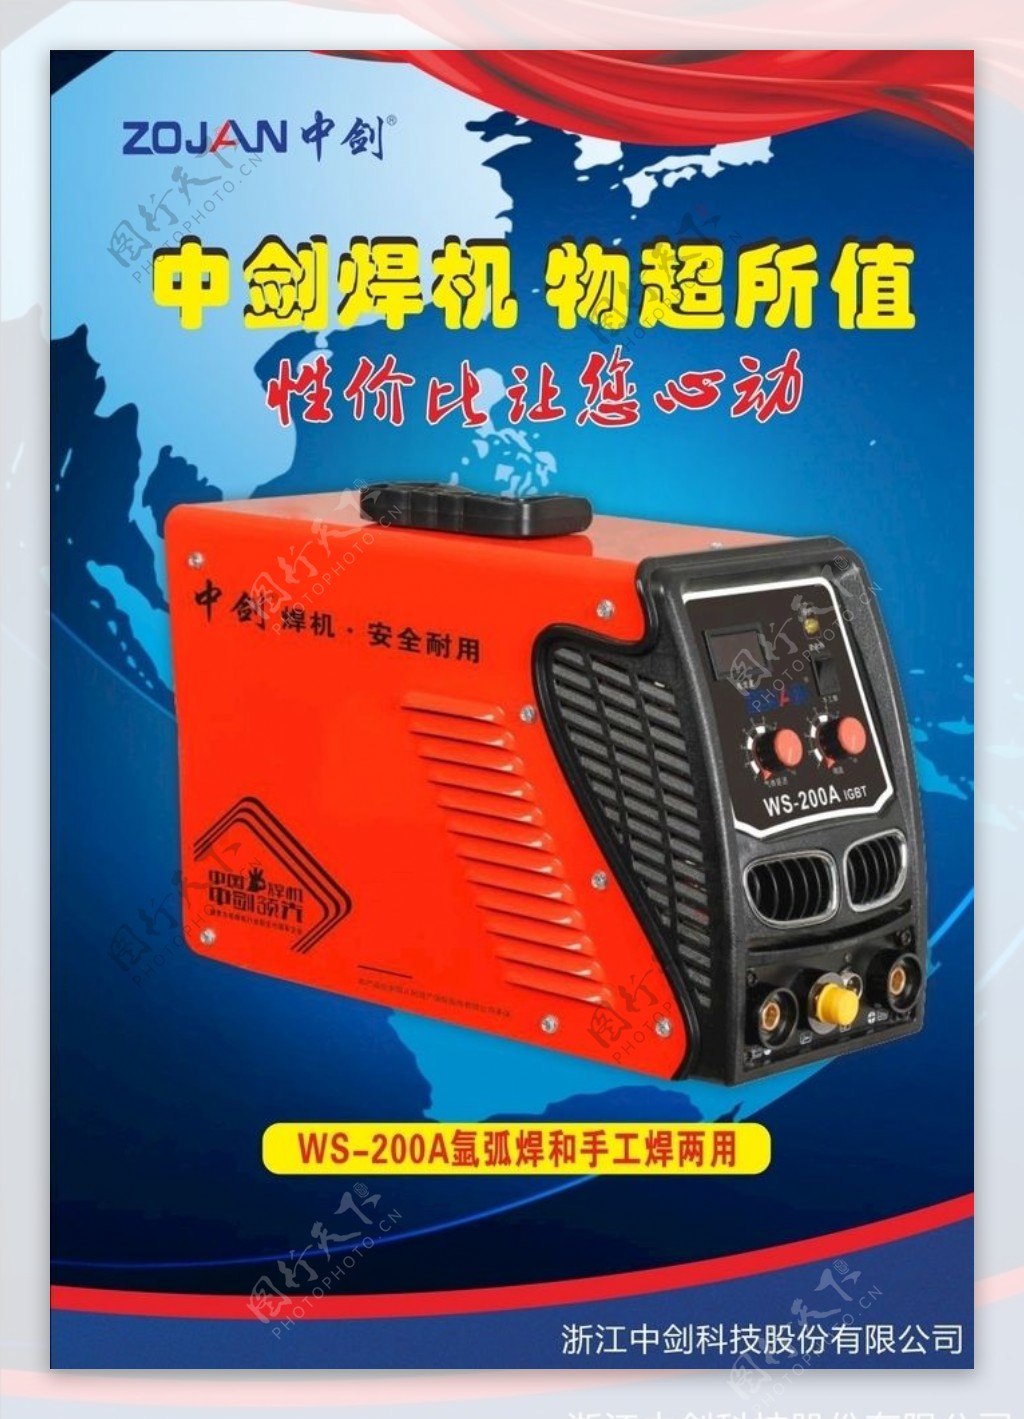 电焊机产品海报形象广告